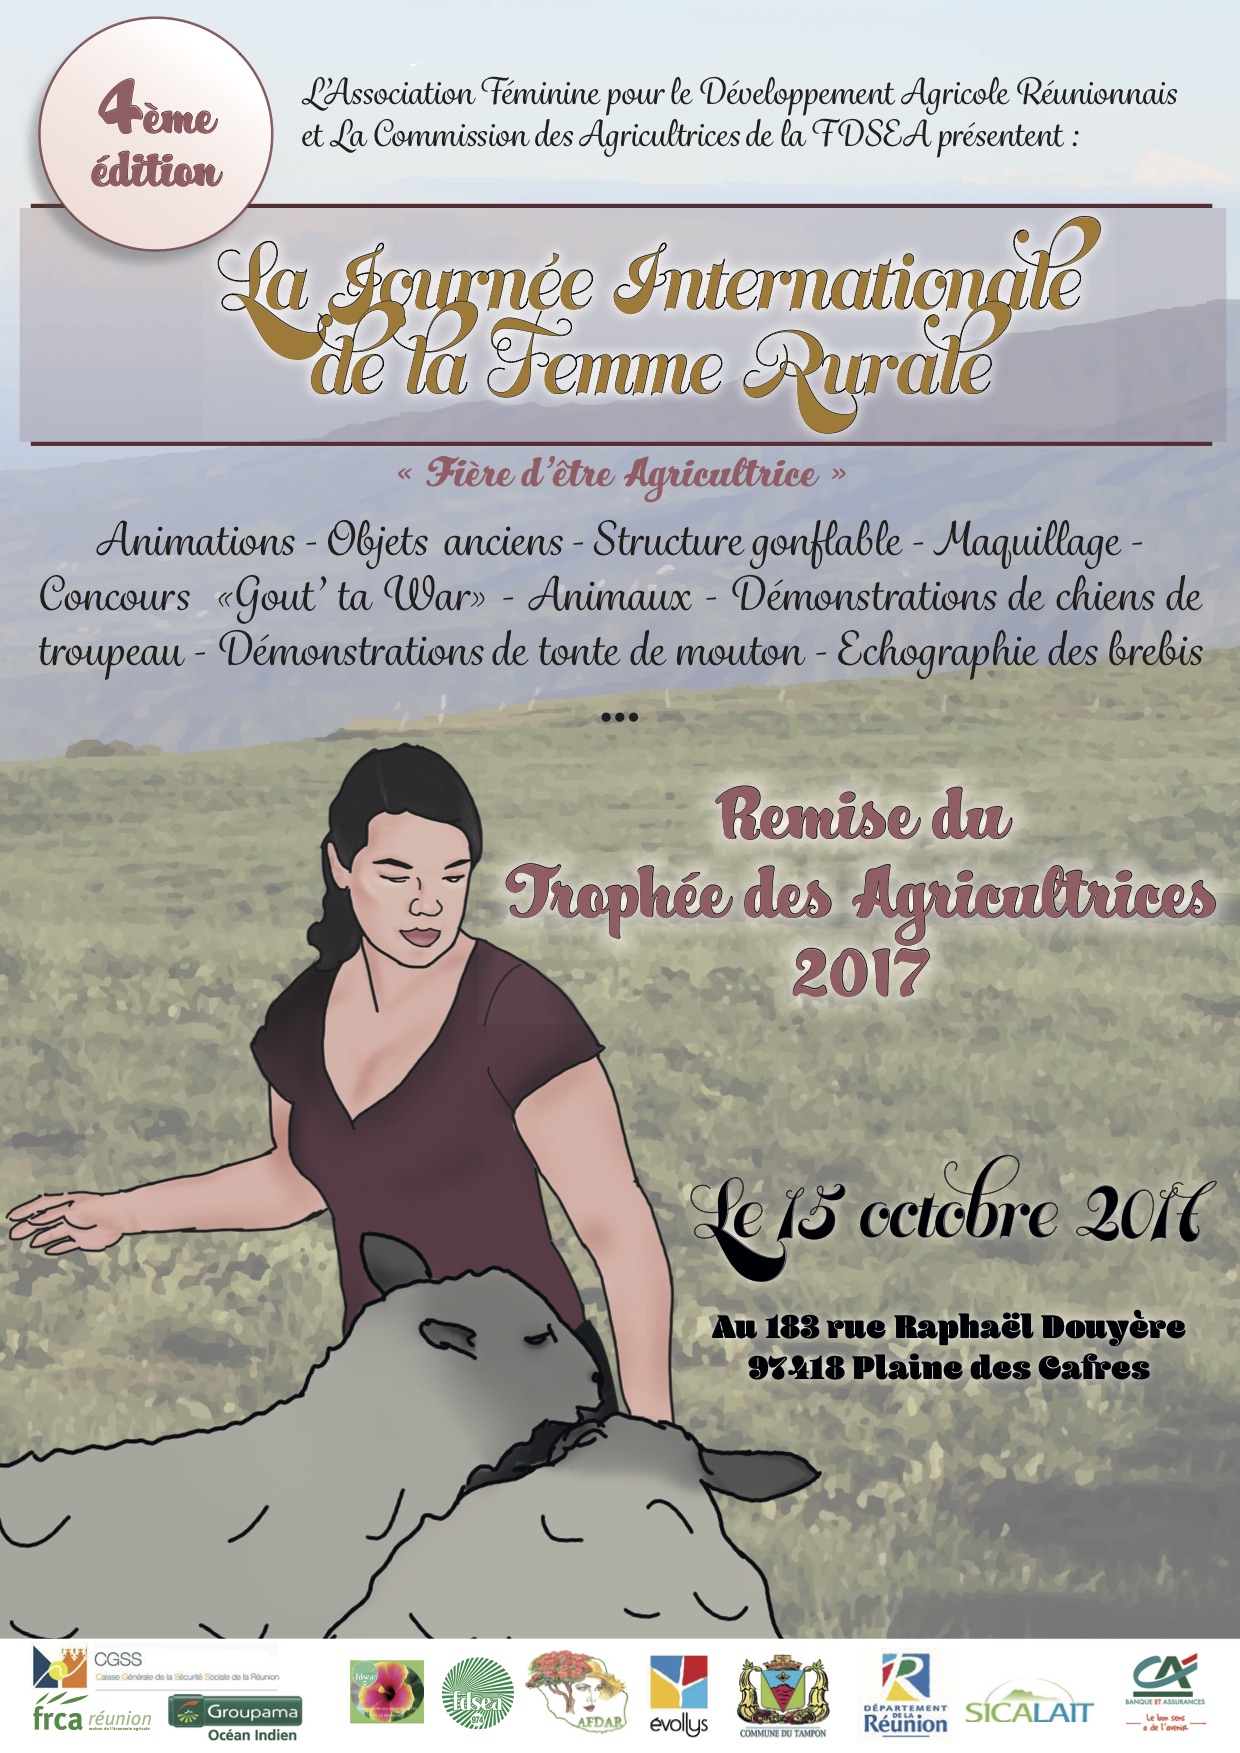 Journée Internationale de la femme rurale 2017 et 3e trophée des agricultrices 